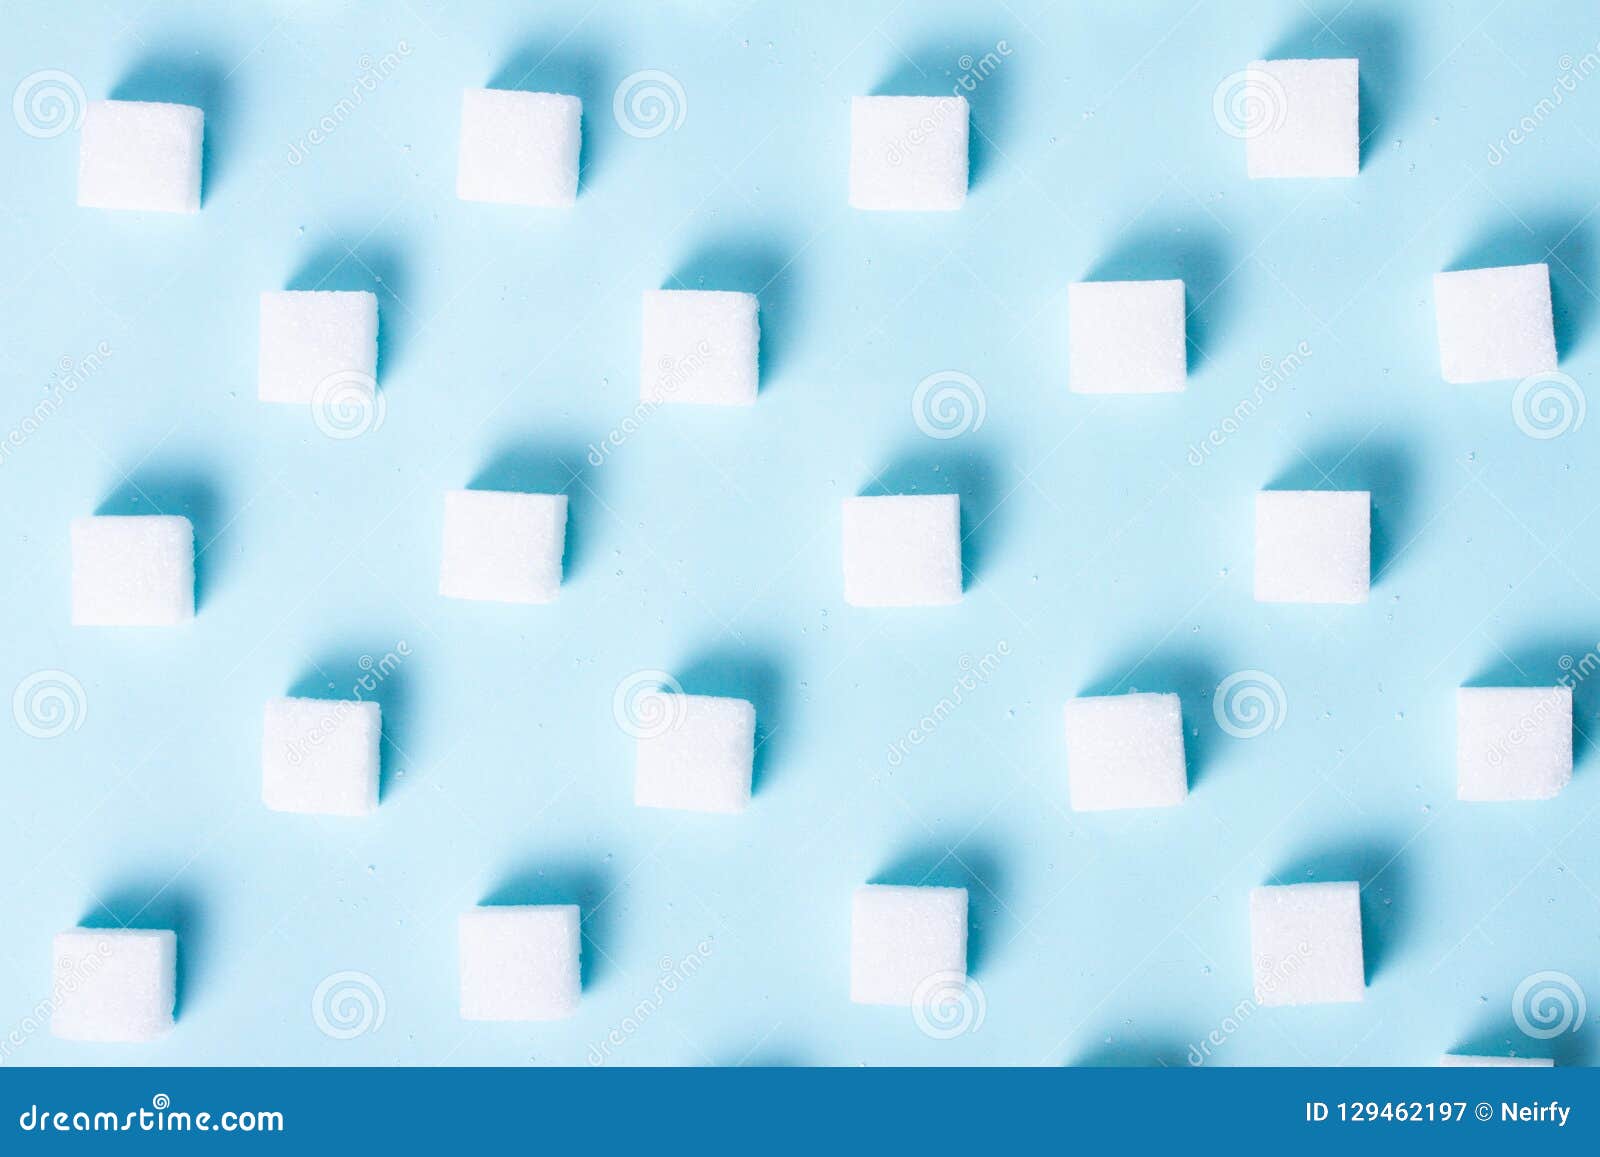 Sugar on blue background stock image. Image of cube - 129462197